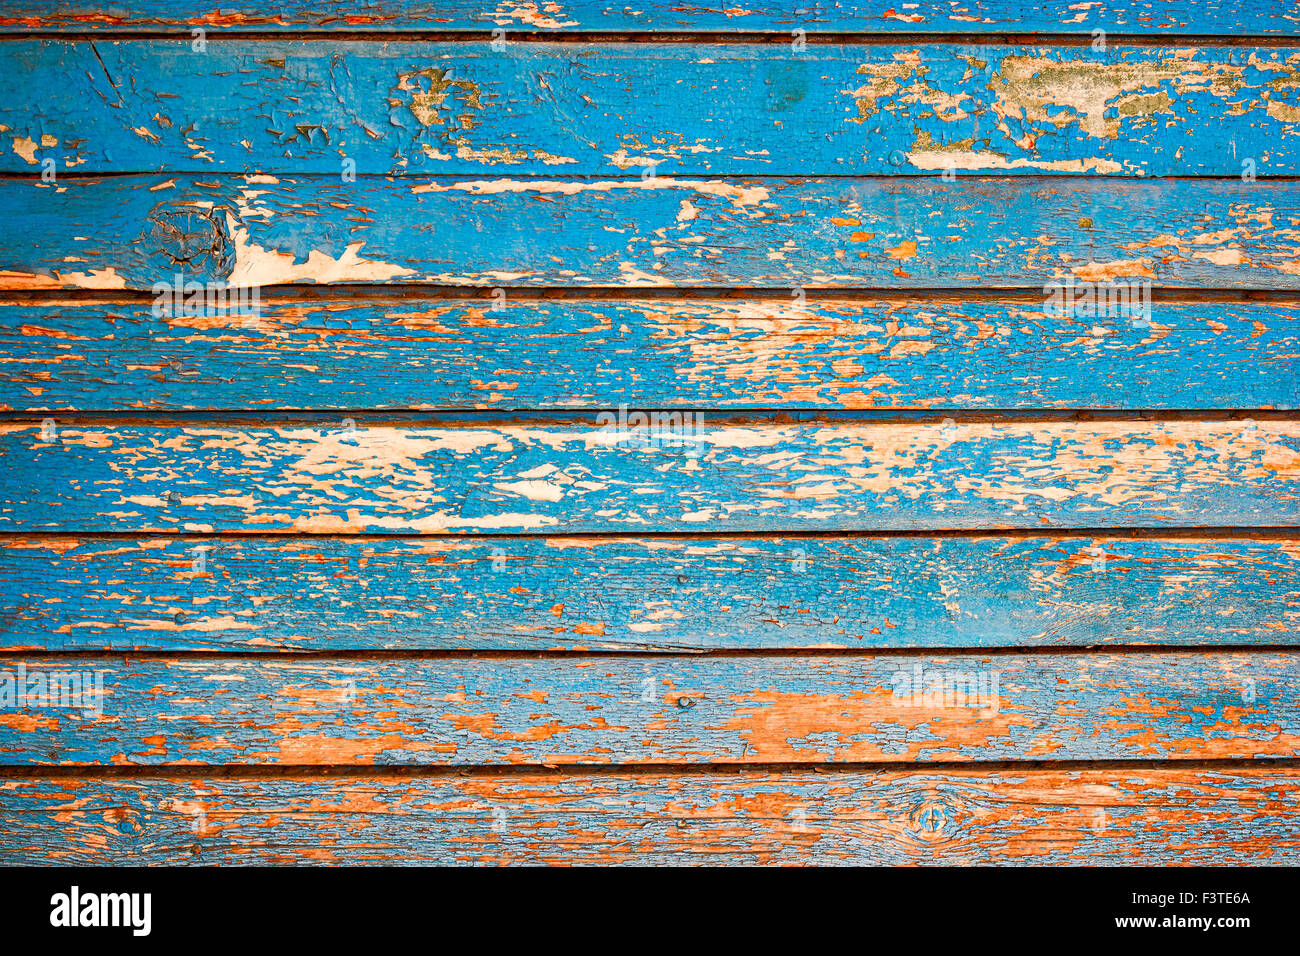 Gỗ màu xanh navy rustic mang lại cho bức ảnh một cảm giác ấm áp và gần gũi. Hãy ngắm đến chi tiết và cảm nhận vẻ đẹp tự nhiên của nó.